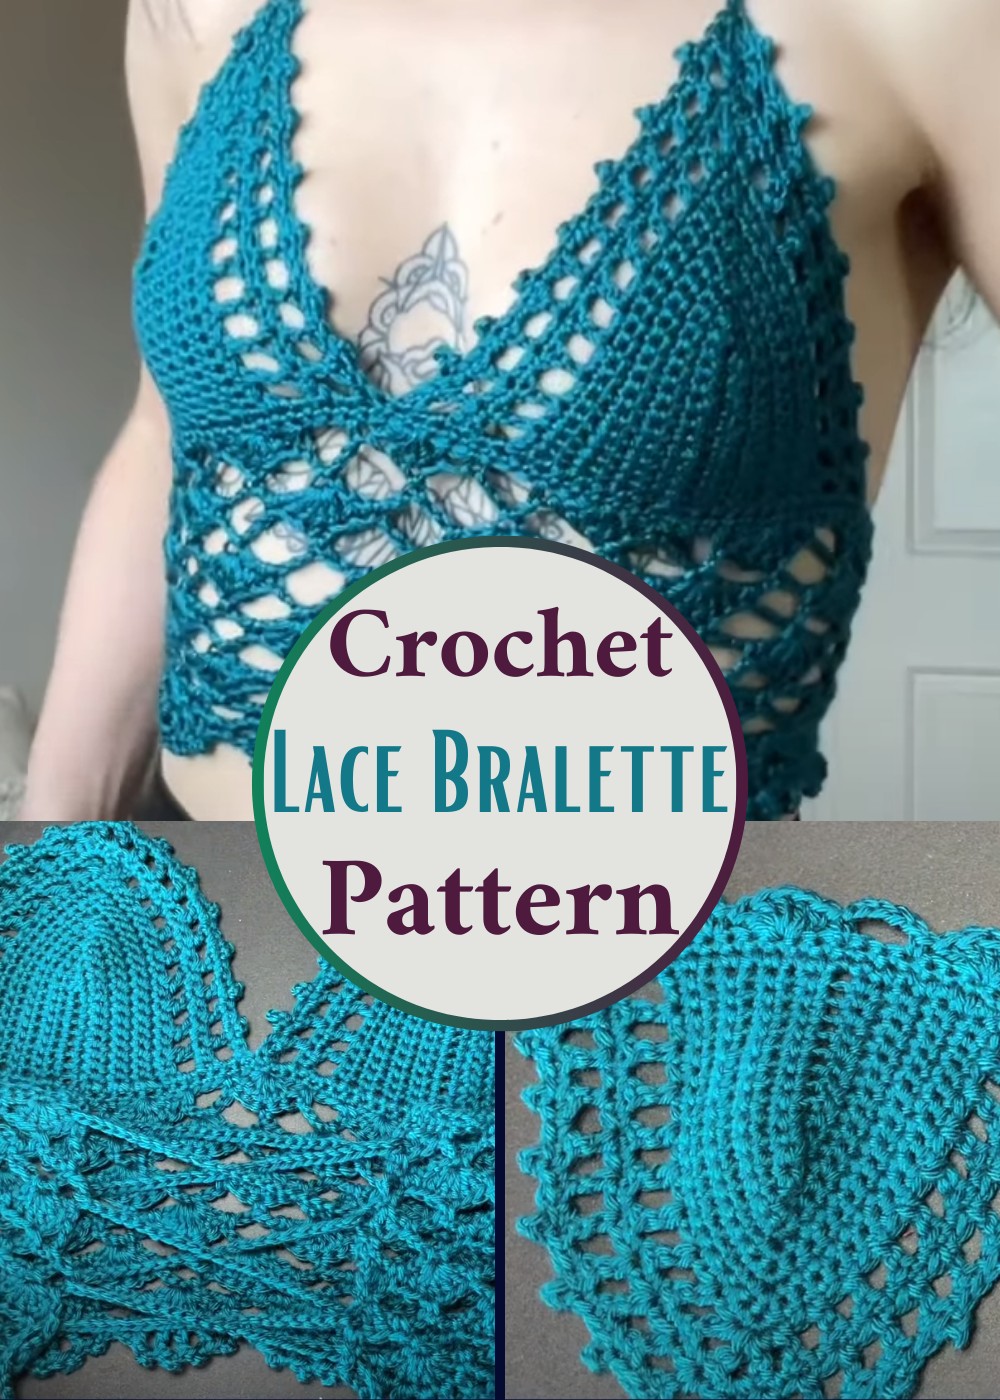 Crochet Lace Bralette Pattern Free